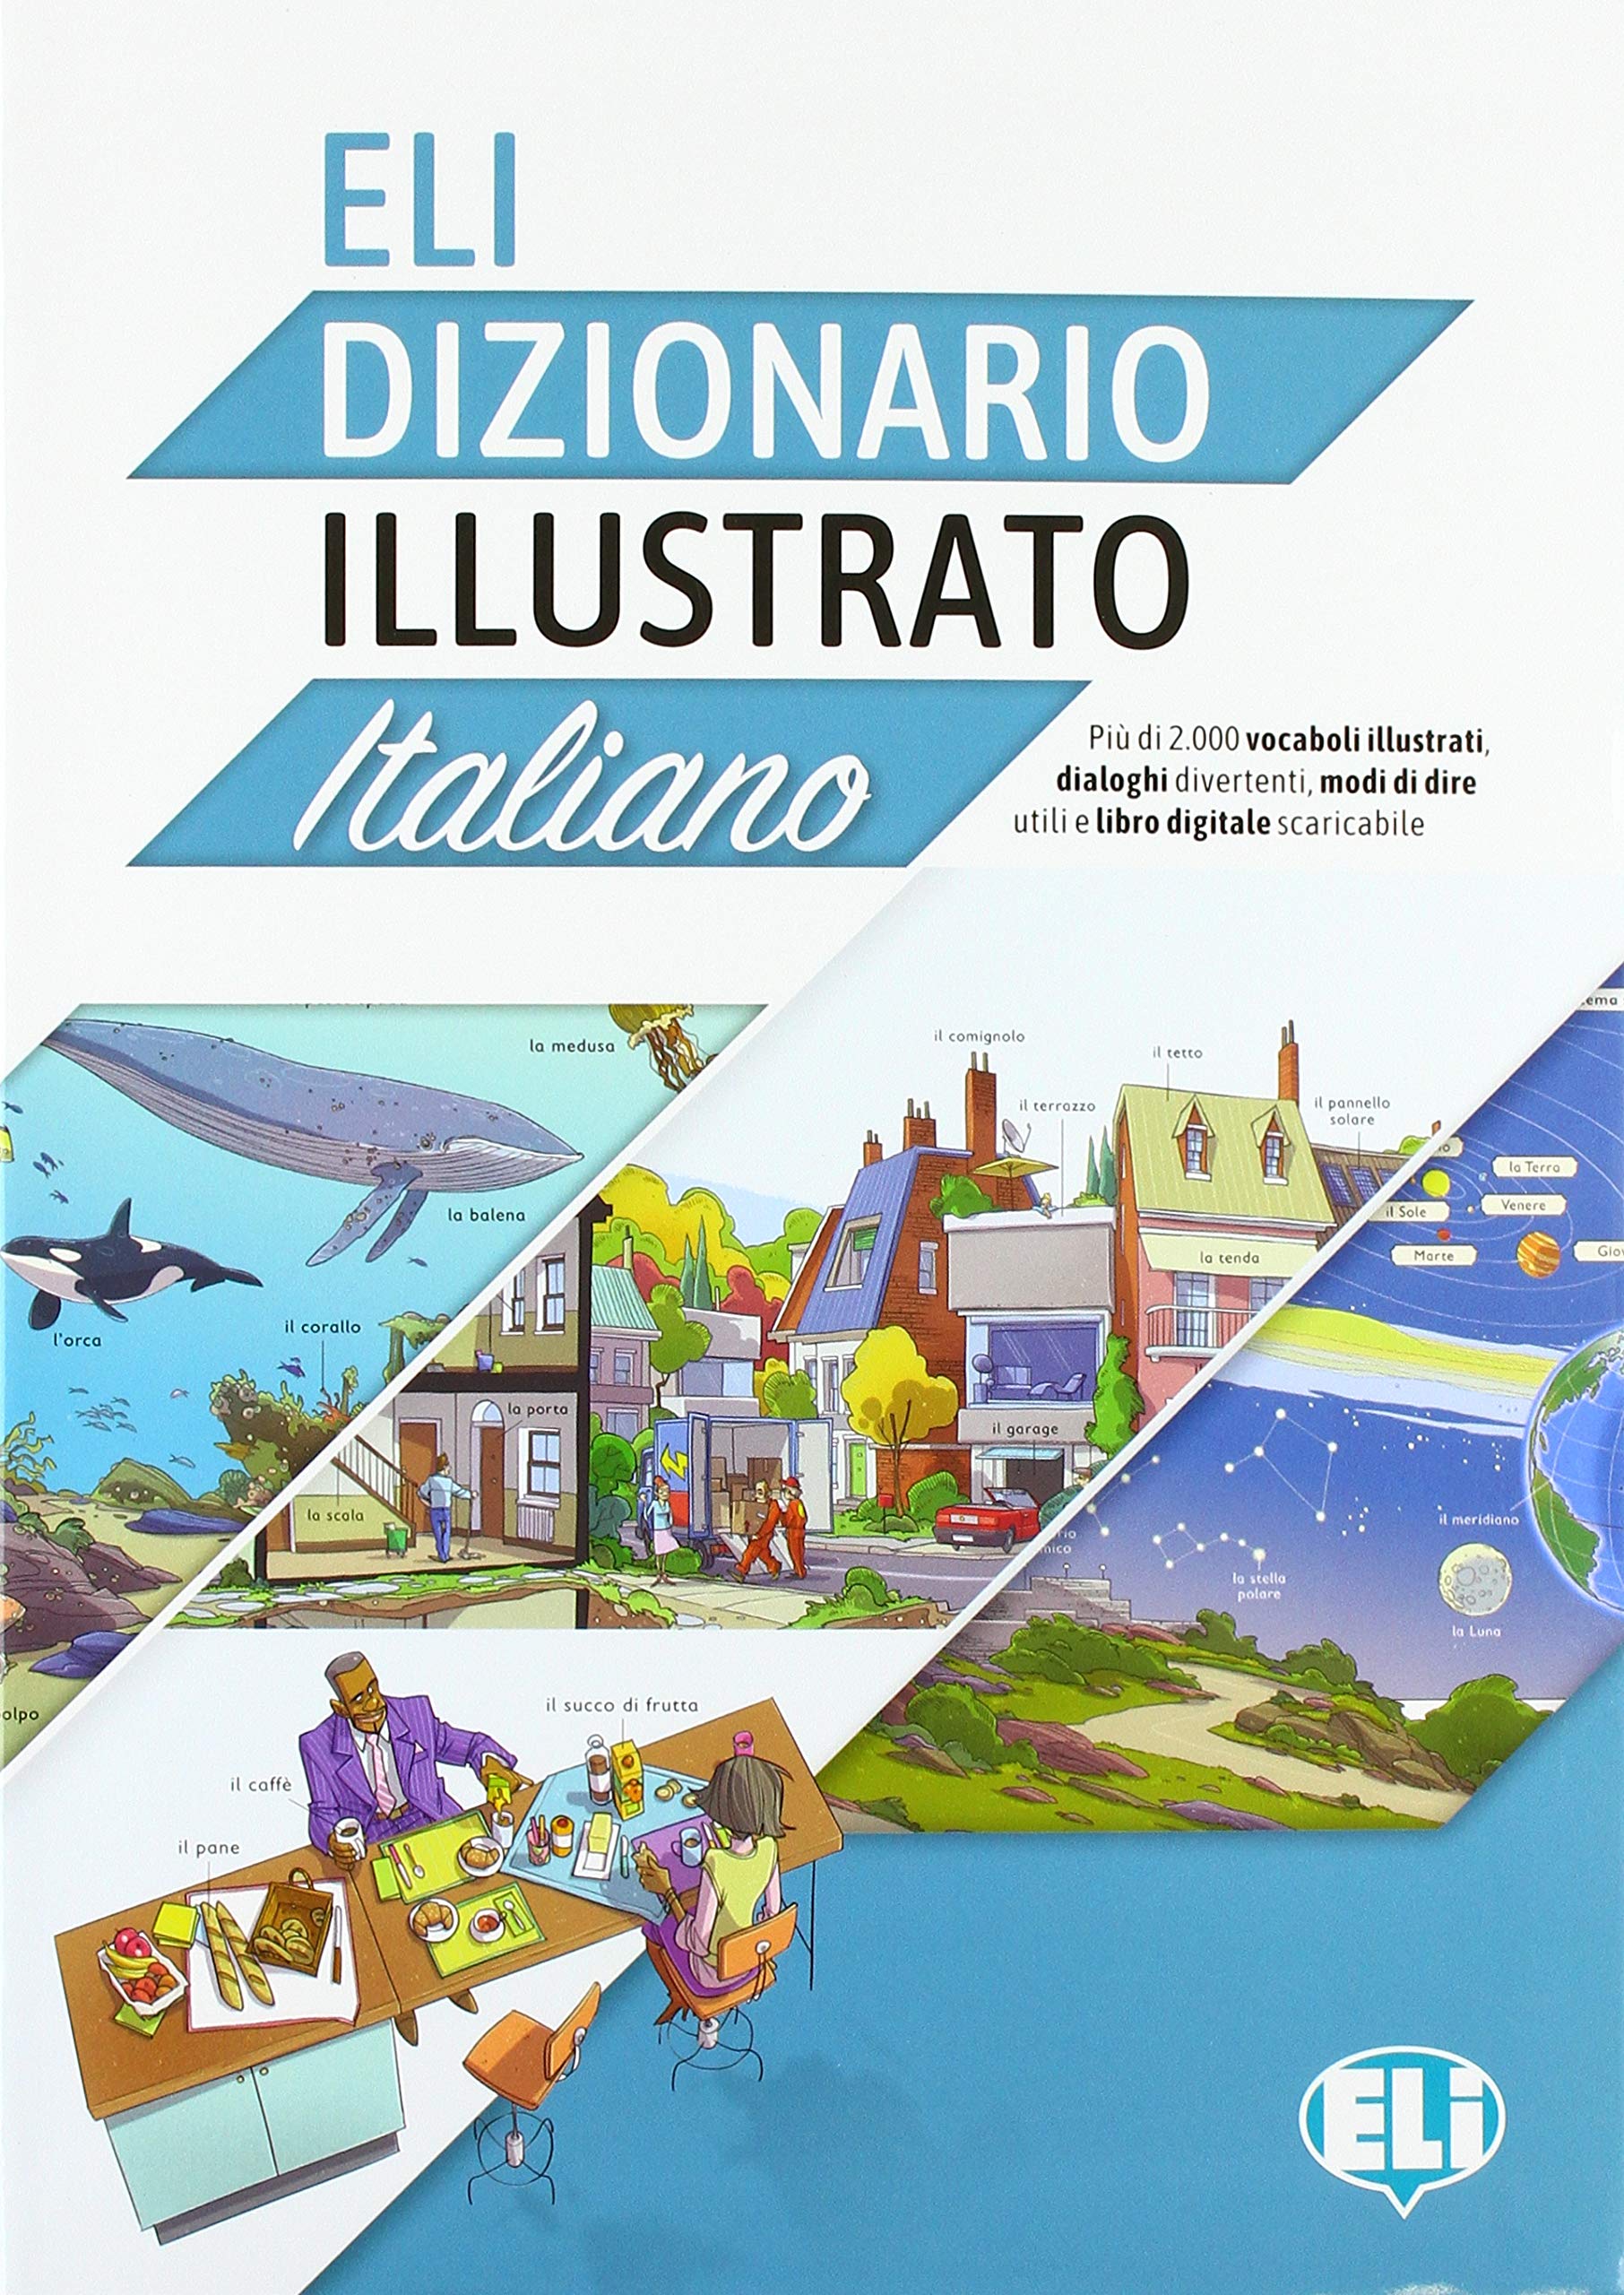 Εκδόσεις Eli Publishing - ELI Dizionario Illustrato Italiano